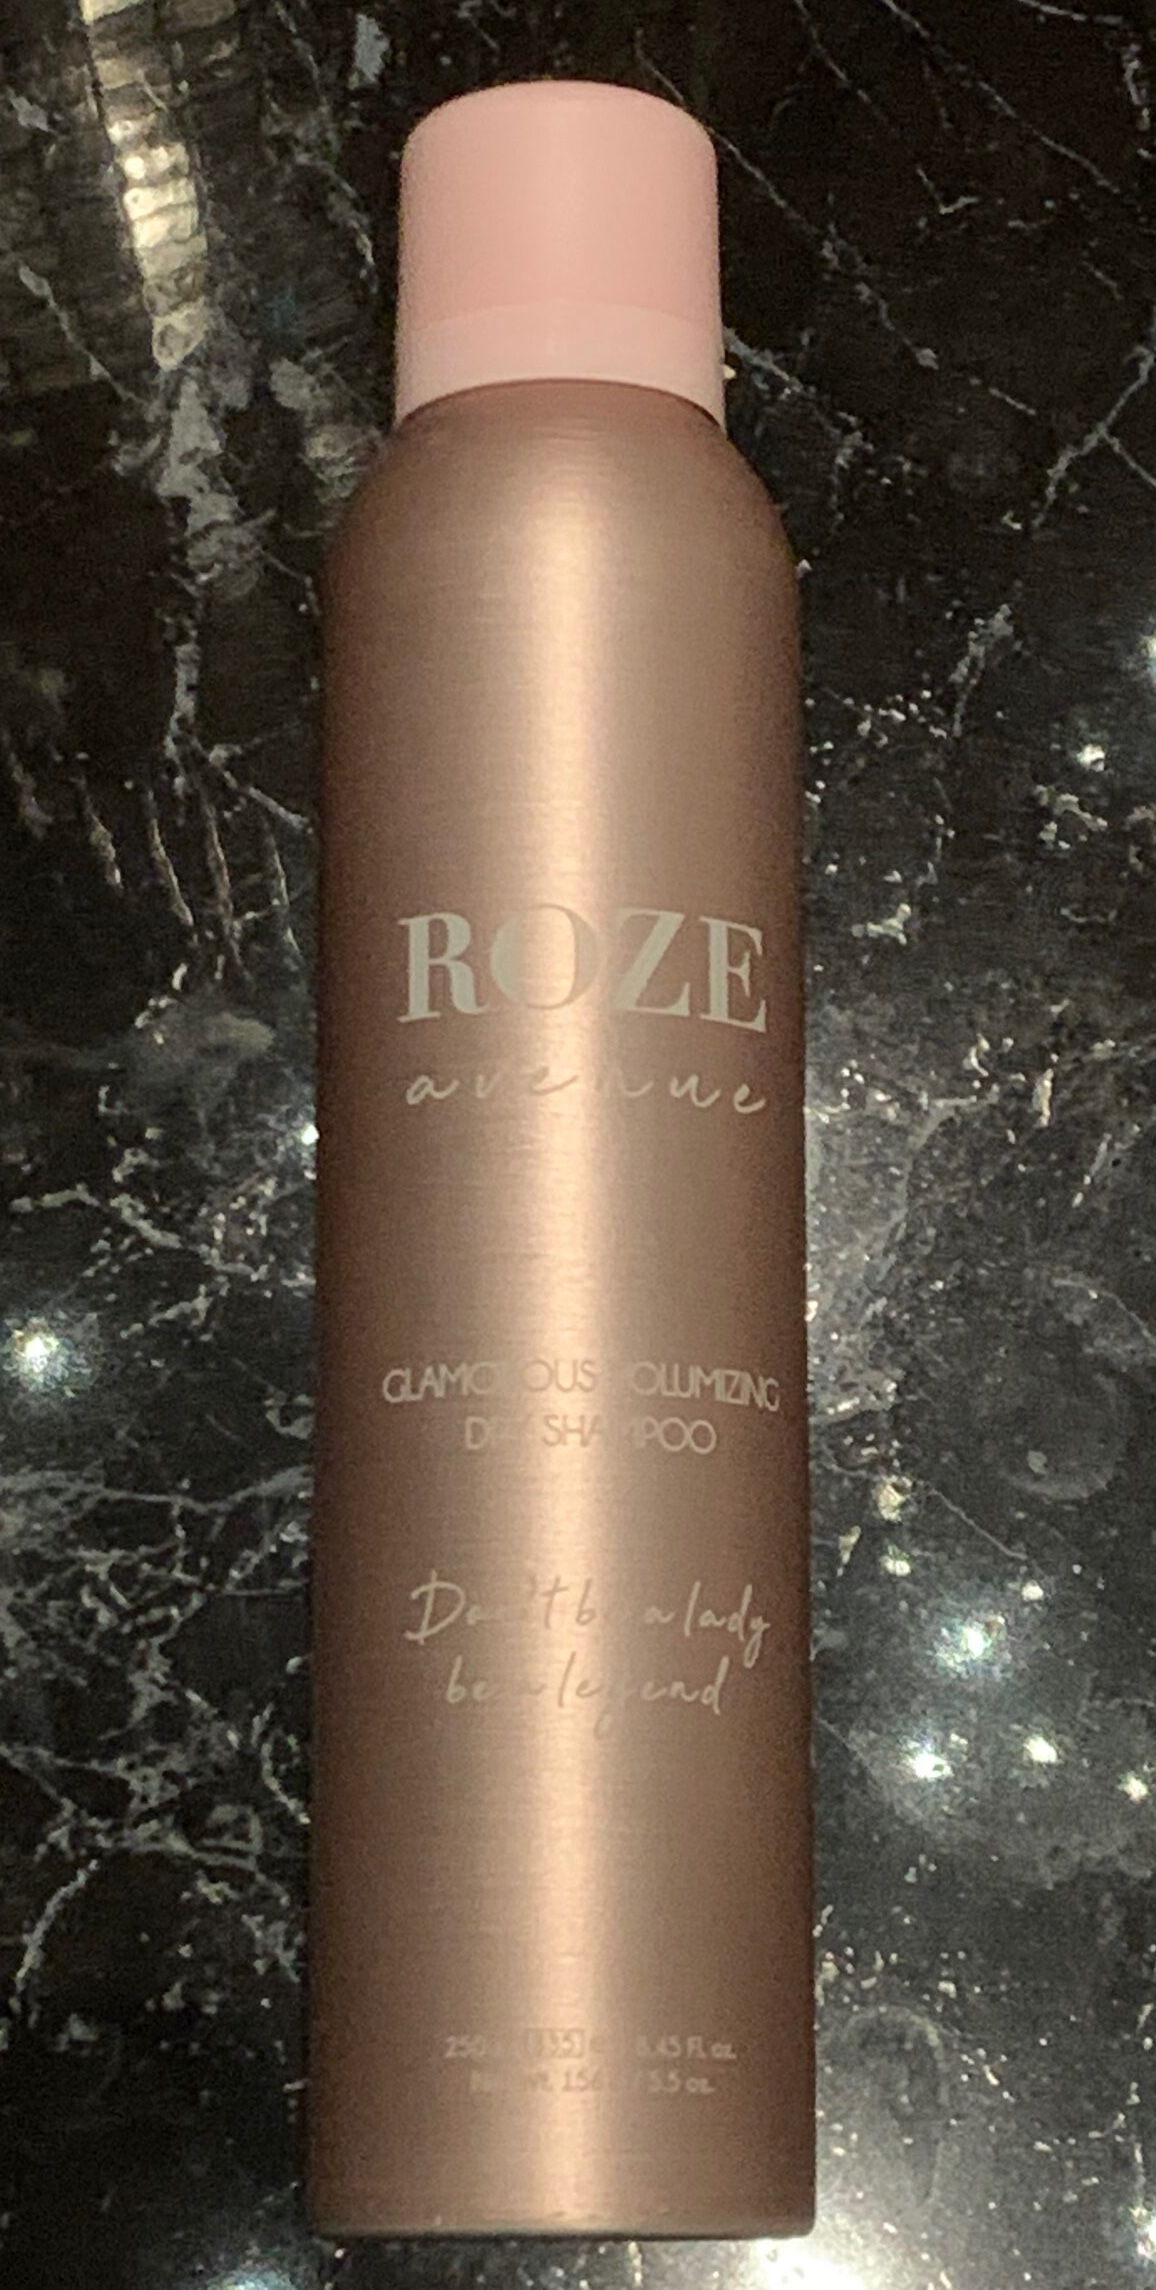 Roze avenue glamorous volumizing dry shampoo